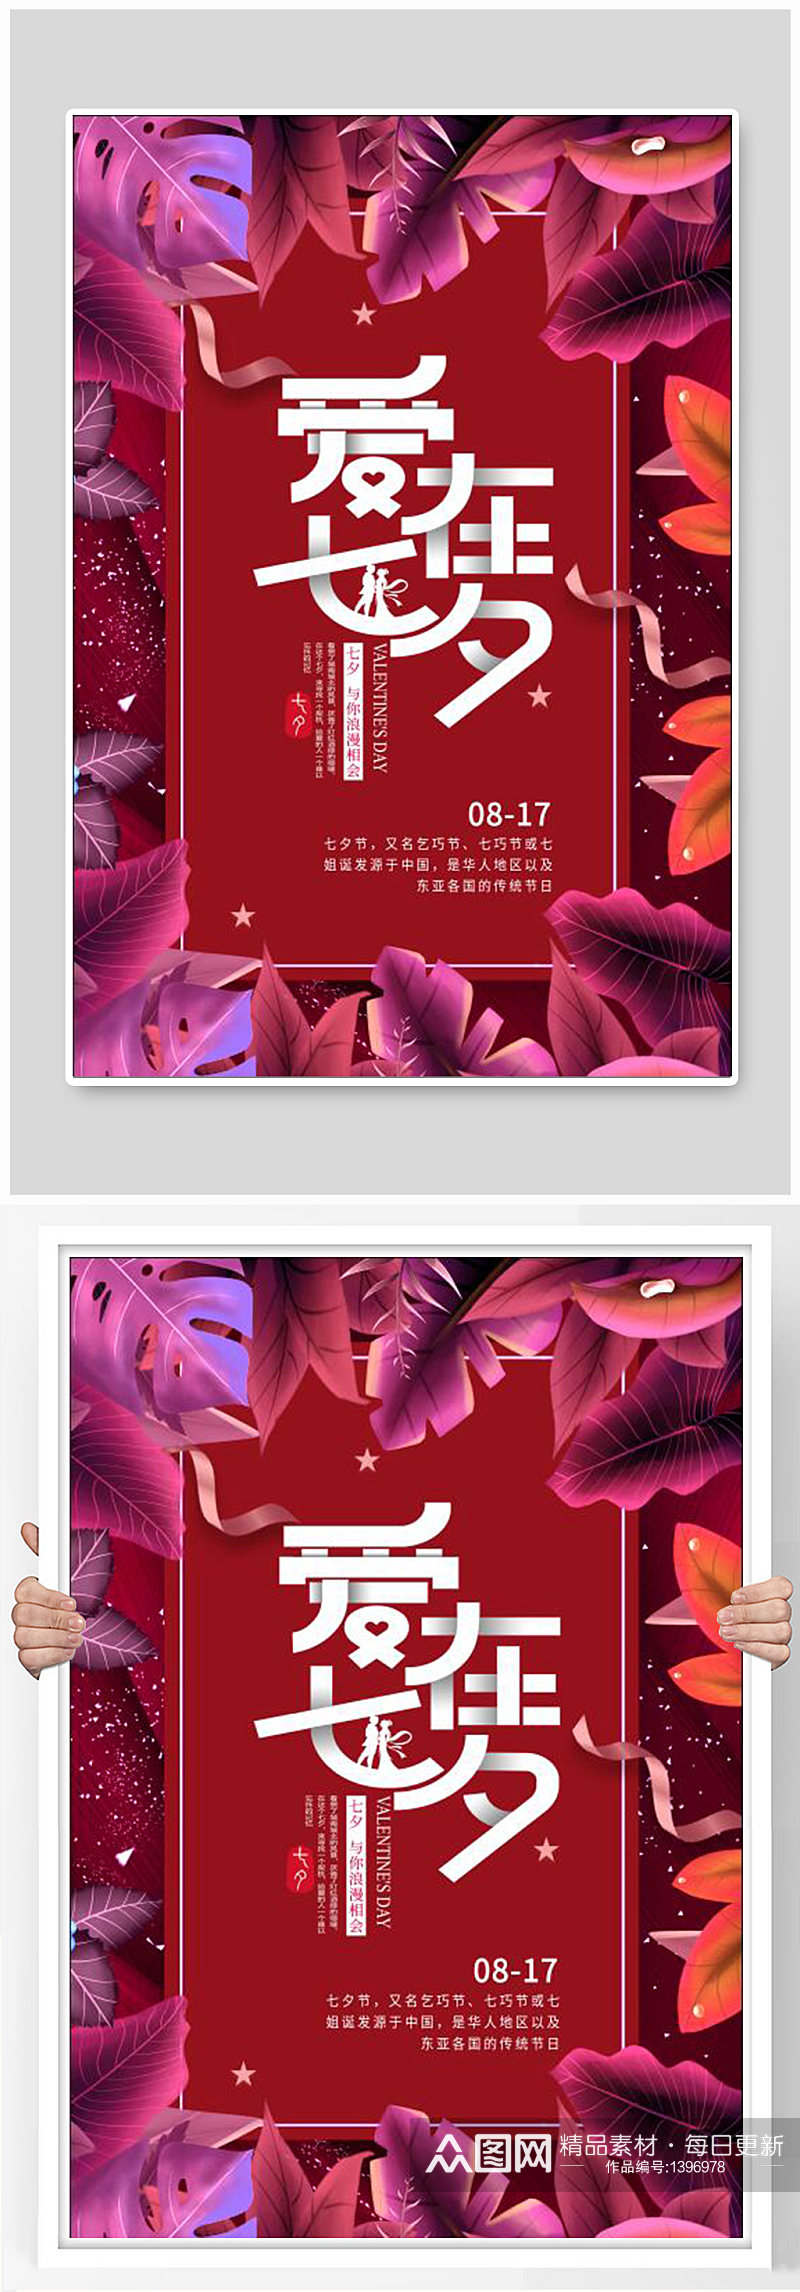 爱在七夕节宣传海报设计制作素材